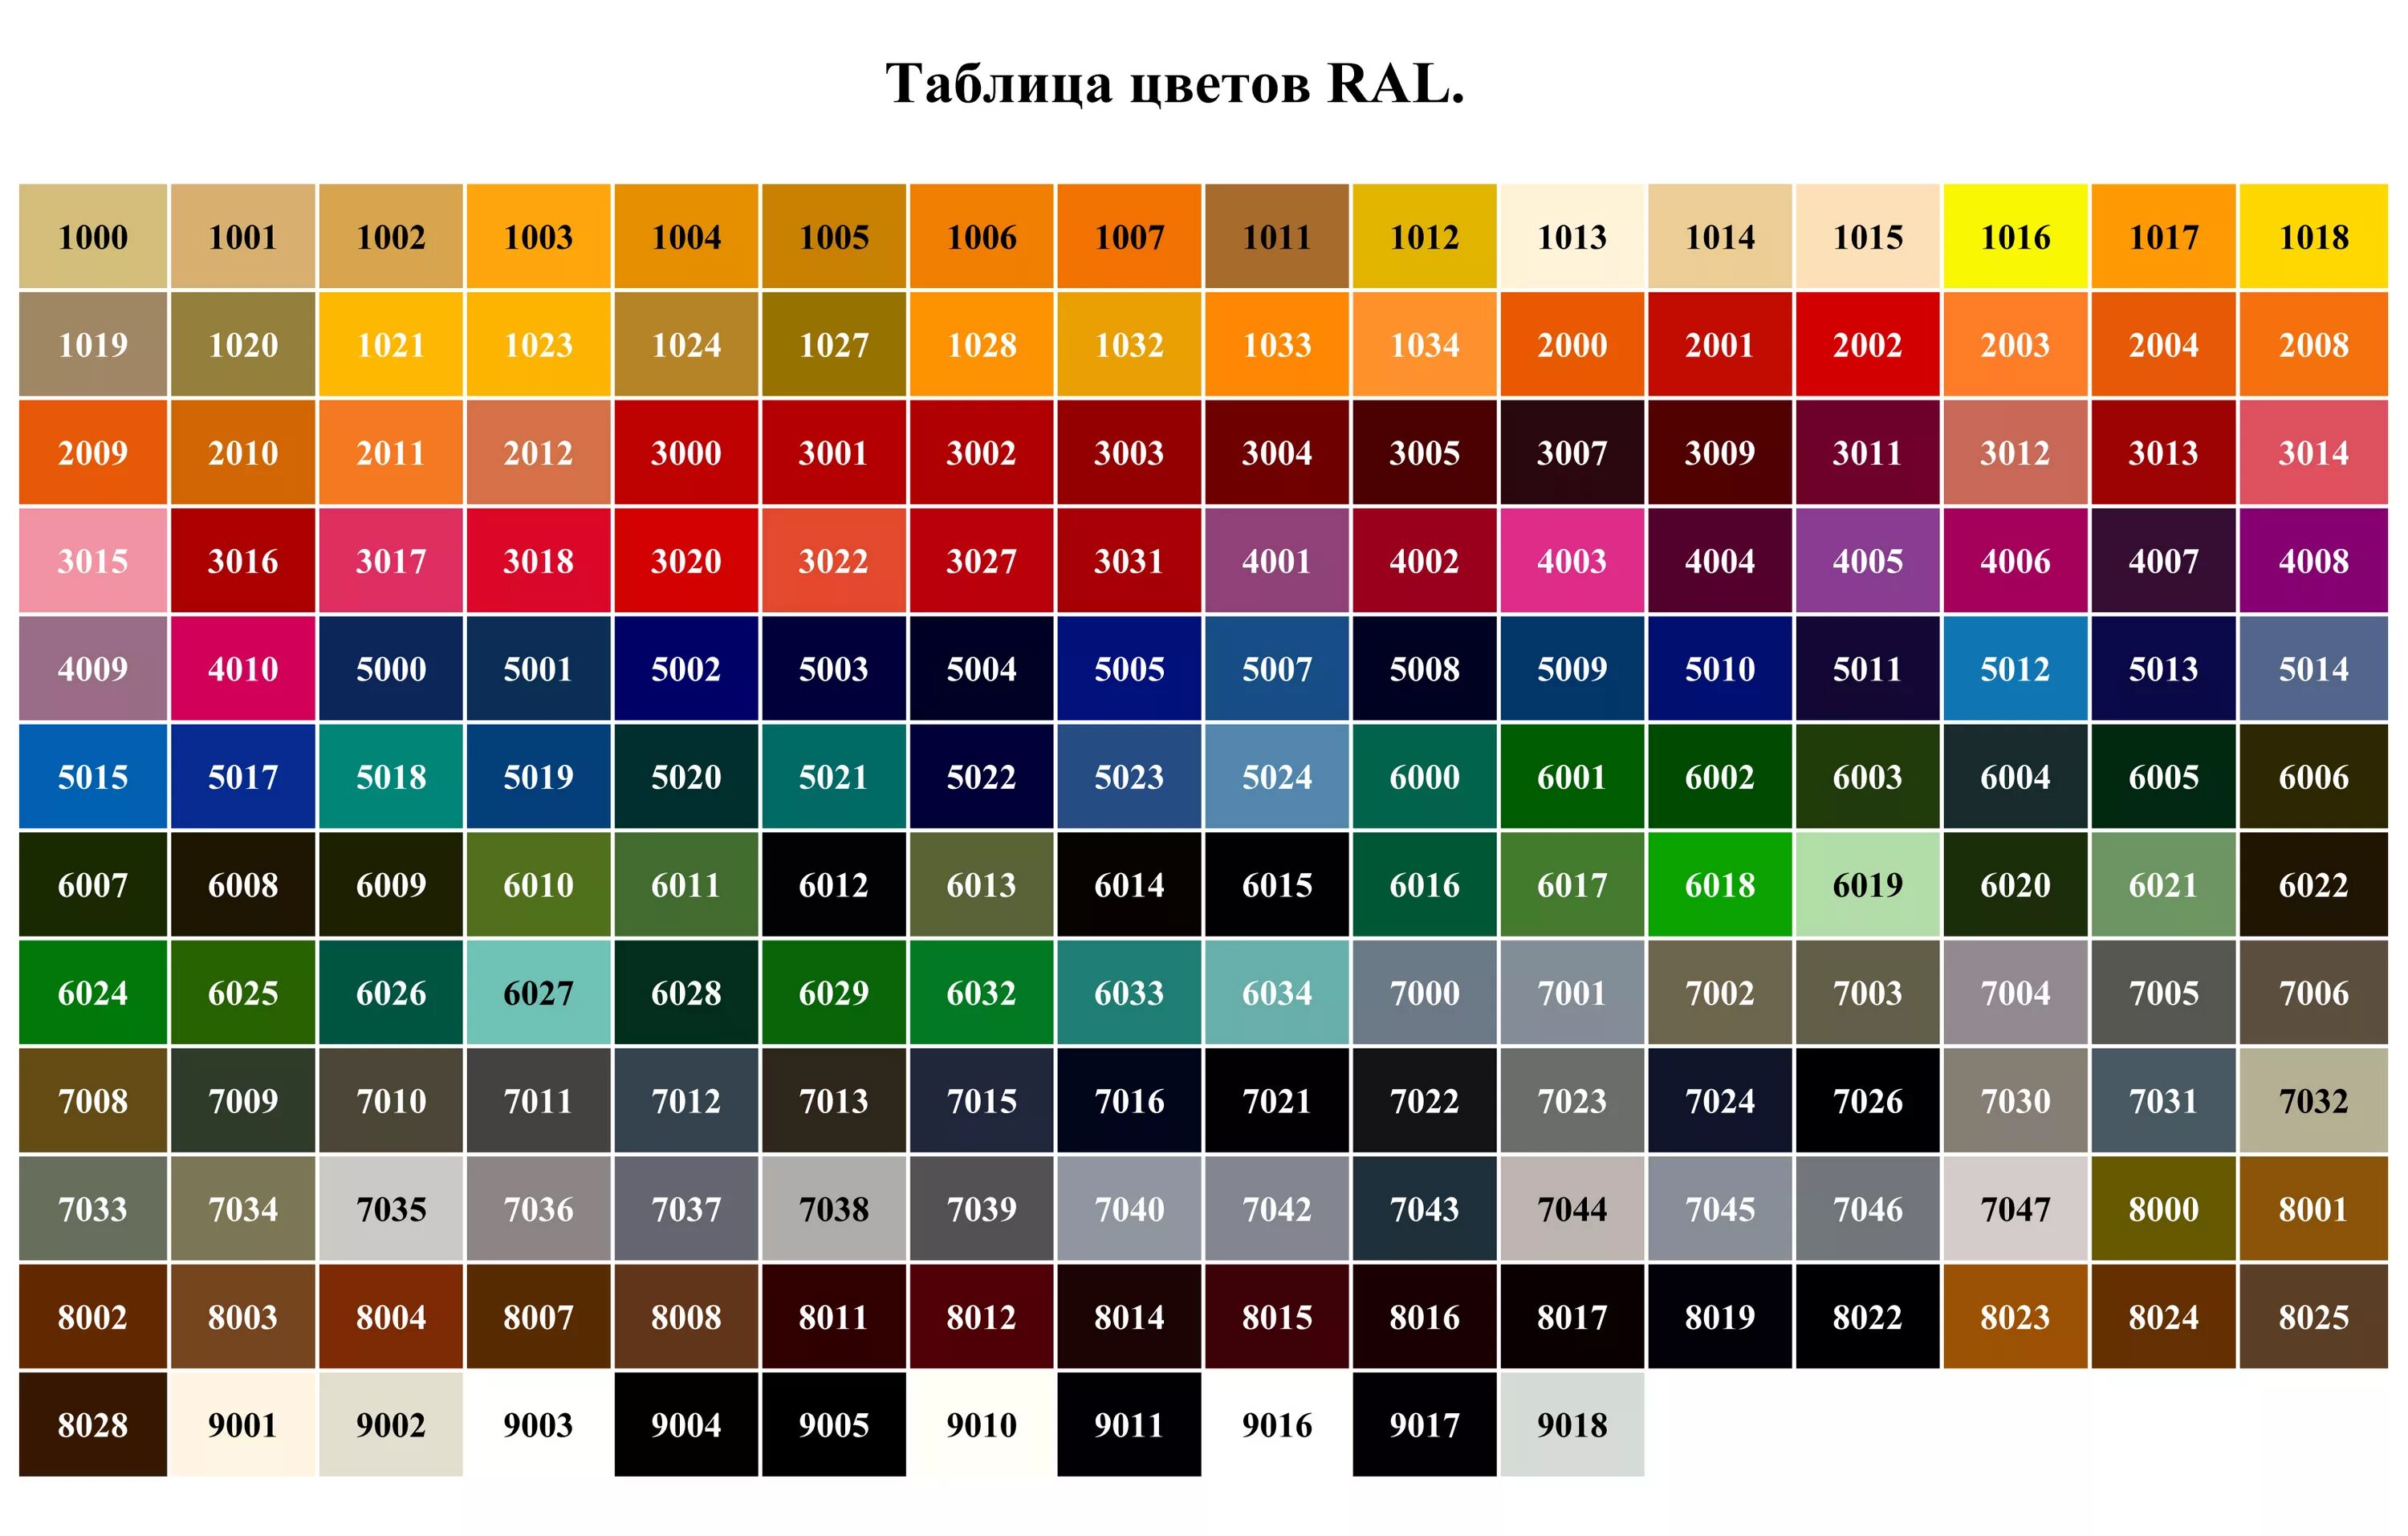 Рал 9016 порошковая краска. Краска RAL 7047. Ral9003 таблица цветов. Таблица цветов RAL Classic k7. L g 0 5